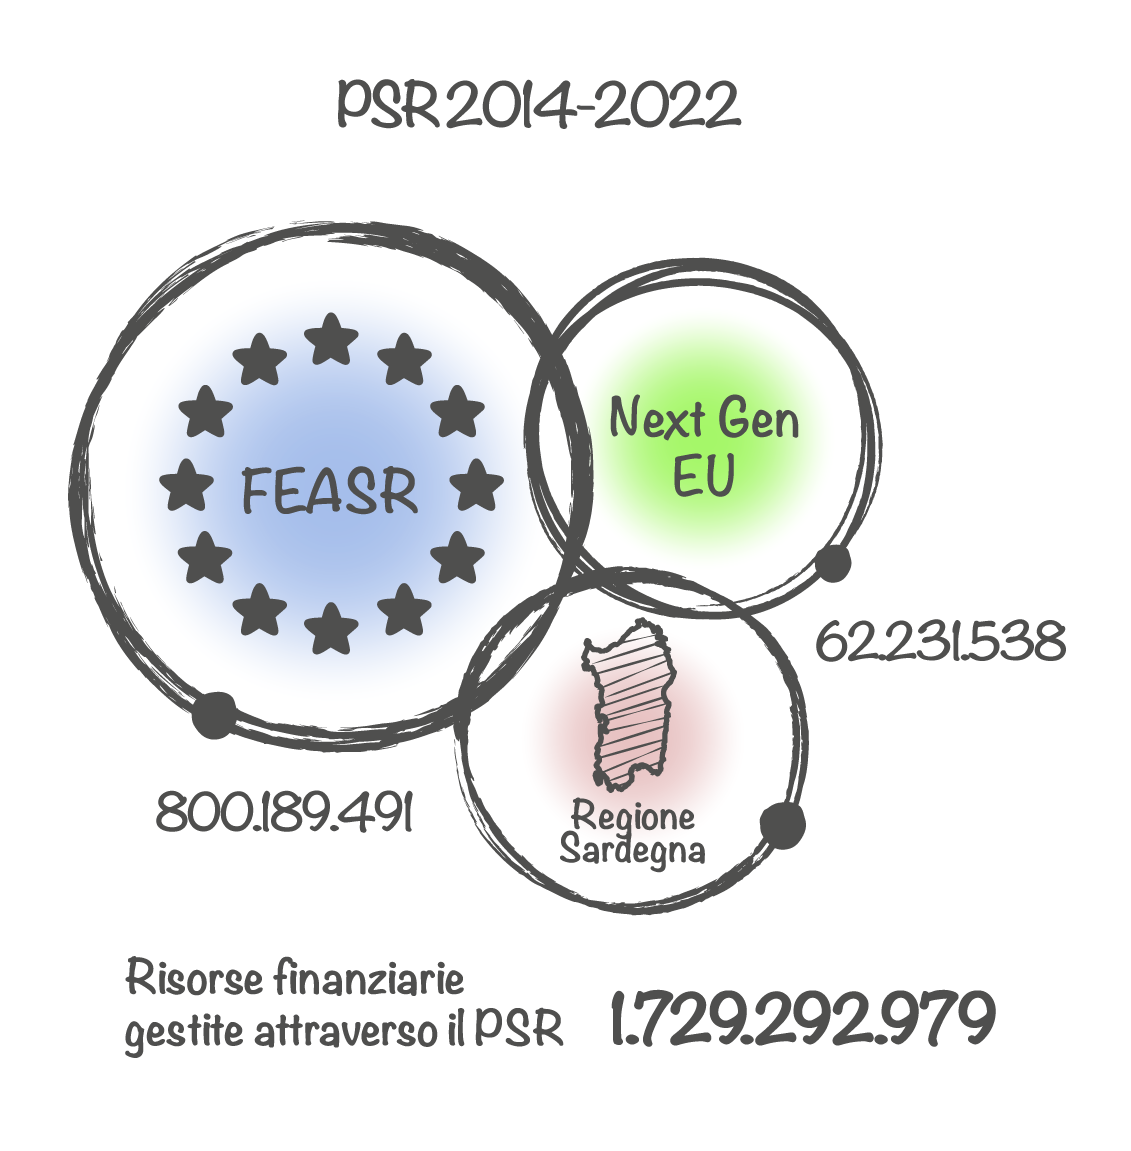 PSR 2014-2022 - Risorse finanziare gestite attraverso il PSR € 1729292979